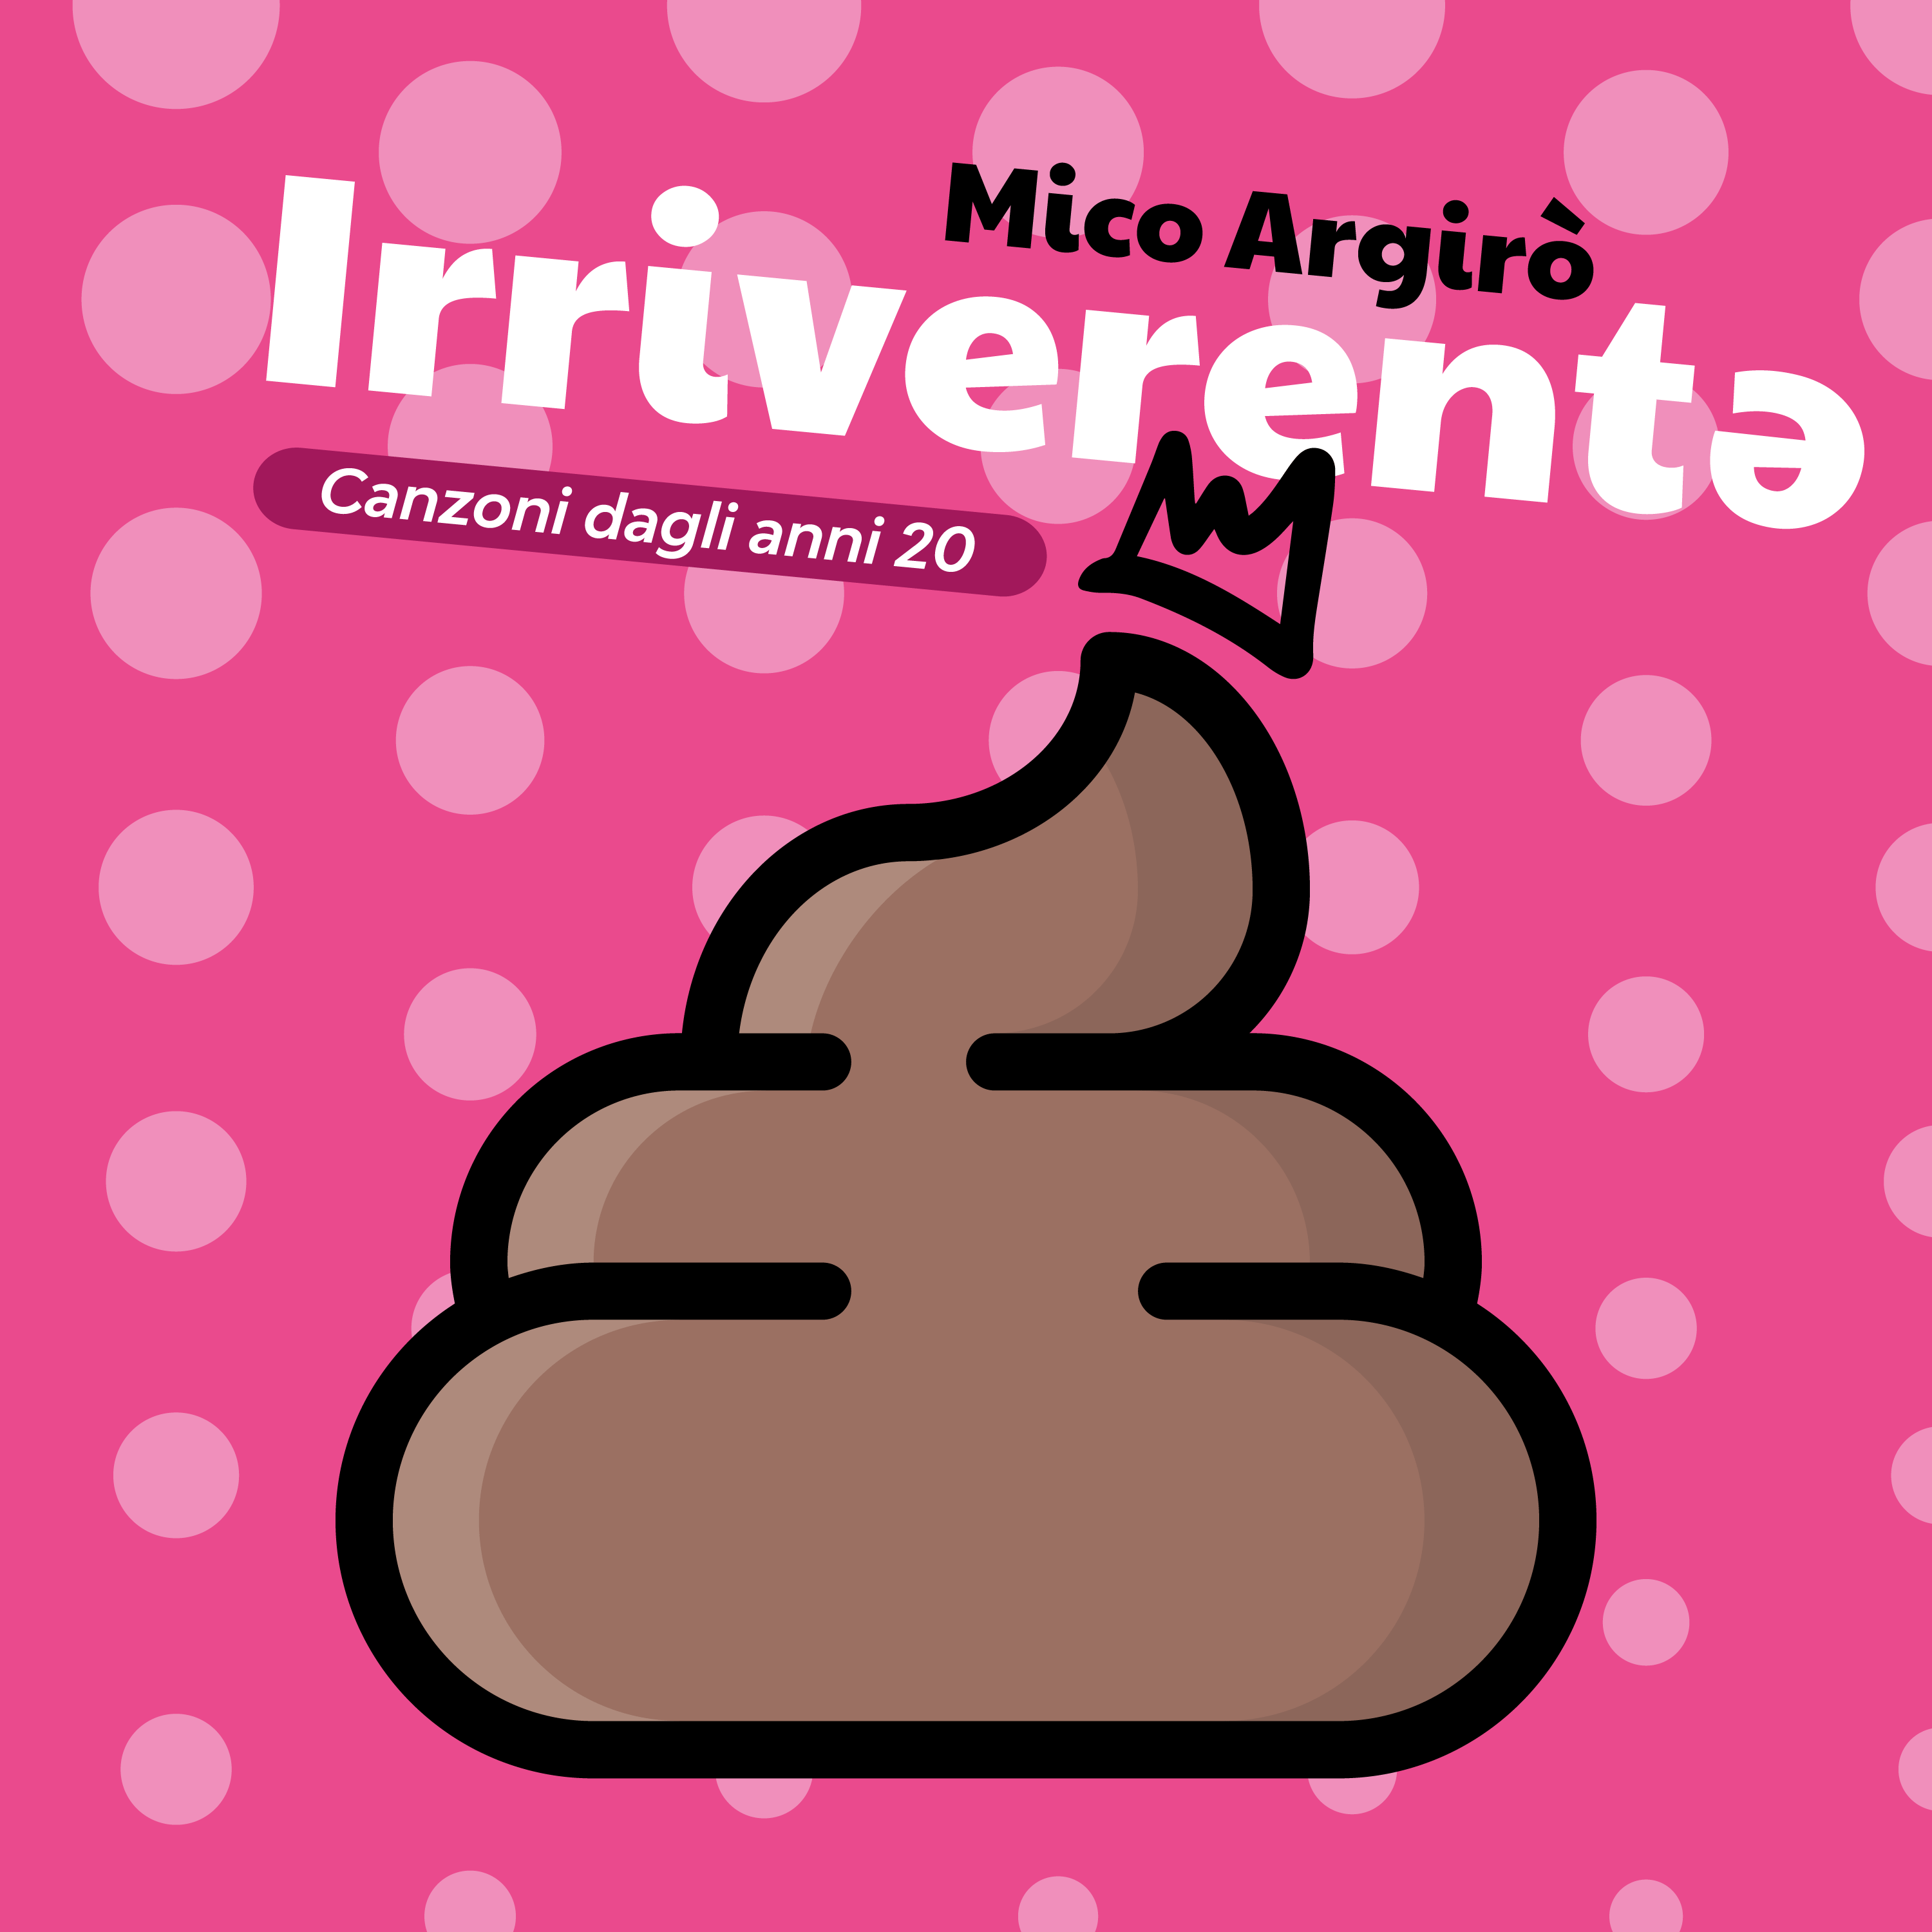 Al momento stai visualizzando “Irriverentə”, canzoni dagli anni 20, è il nuovo, eclettico, album di Mico Argirò